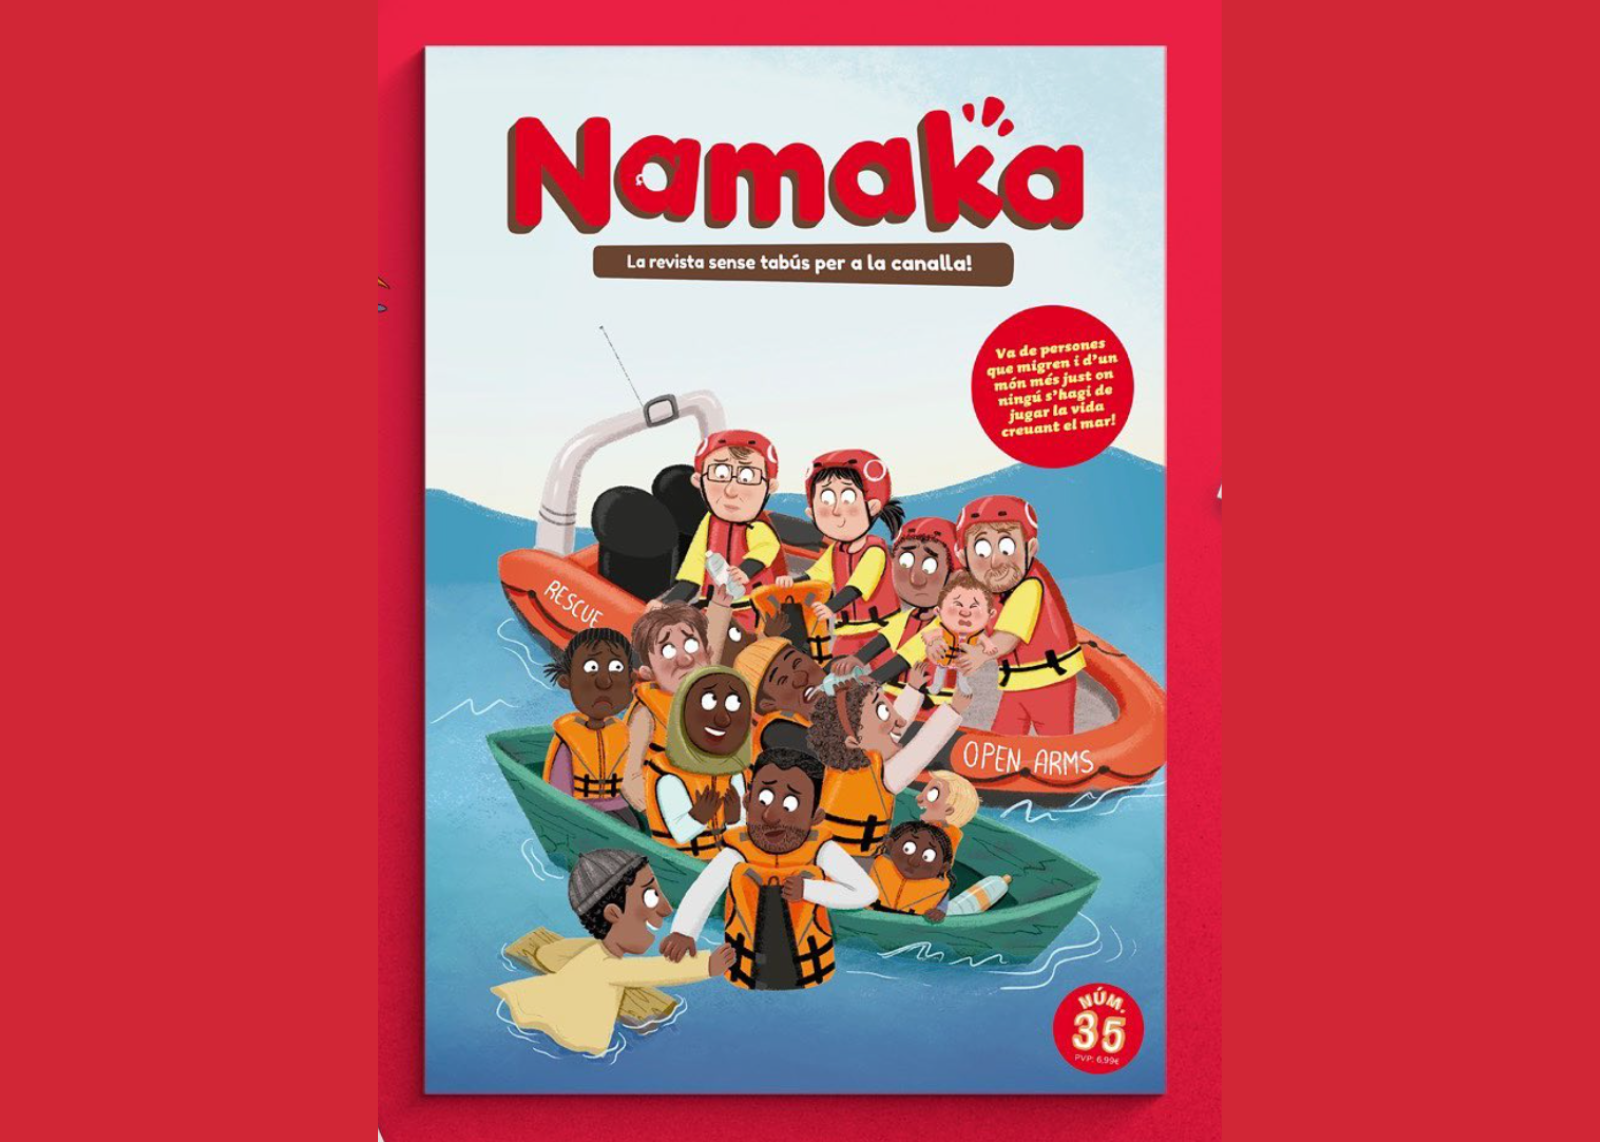 Namaka' consacre un numéro spécial à la migration, aux droits humains et à l'empathie